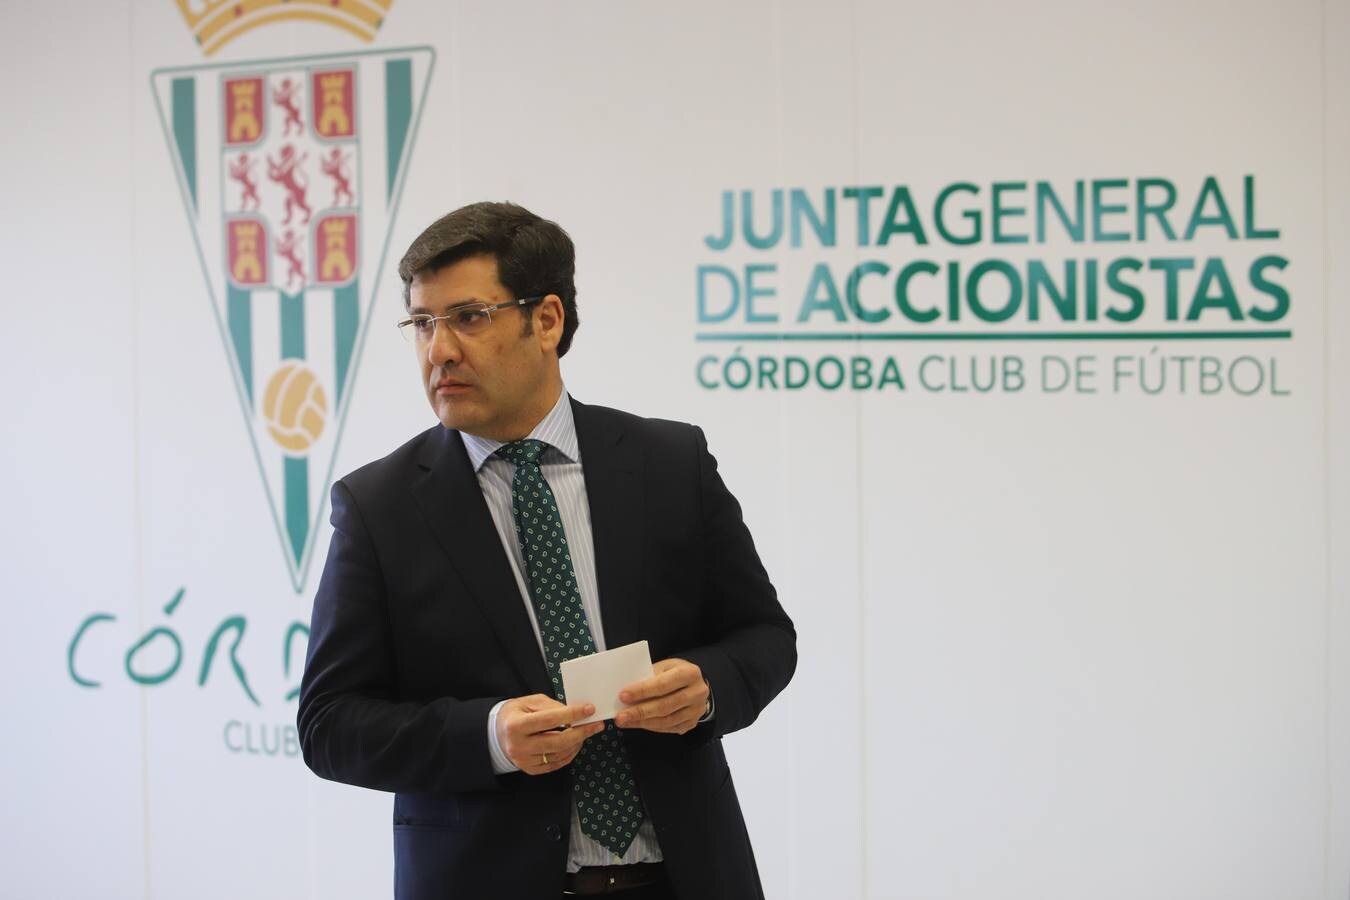 La Junta de Accionistas del Córdoba CF, en imágenes